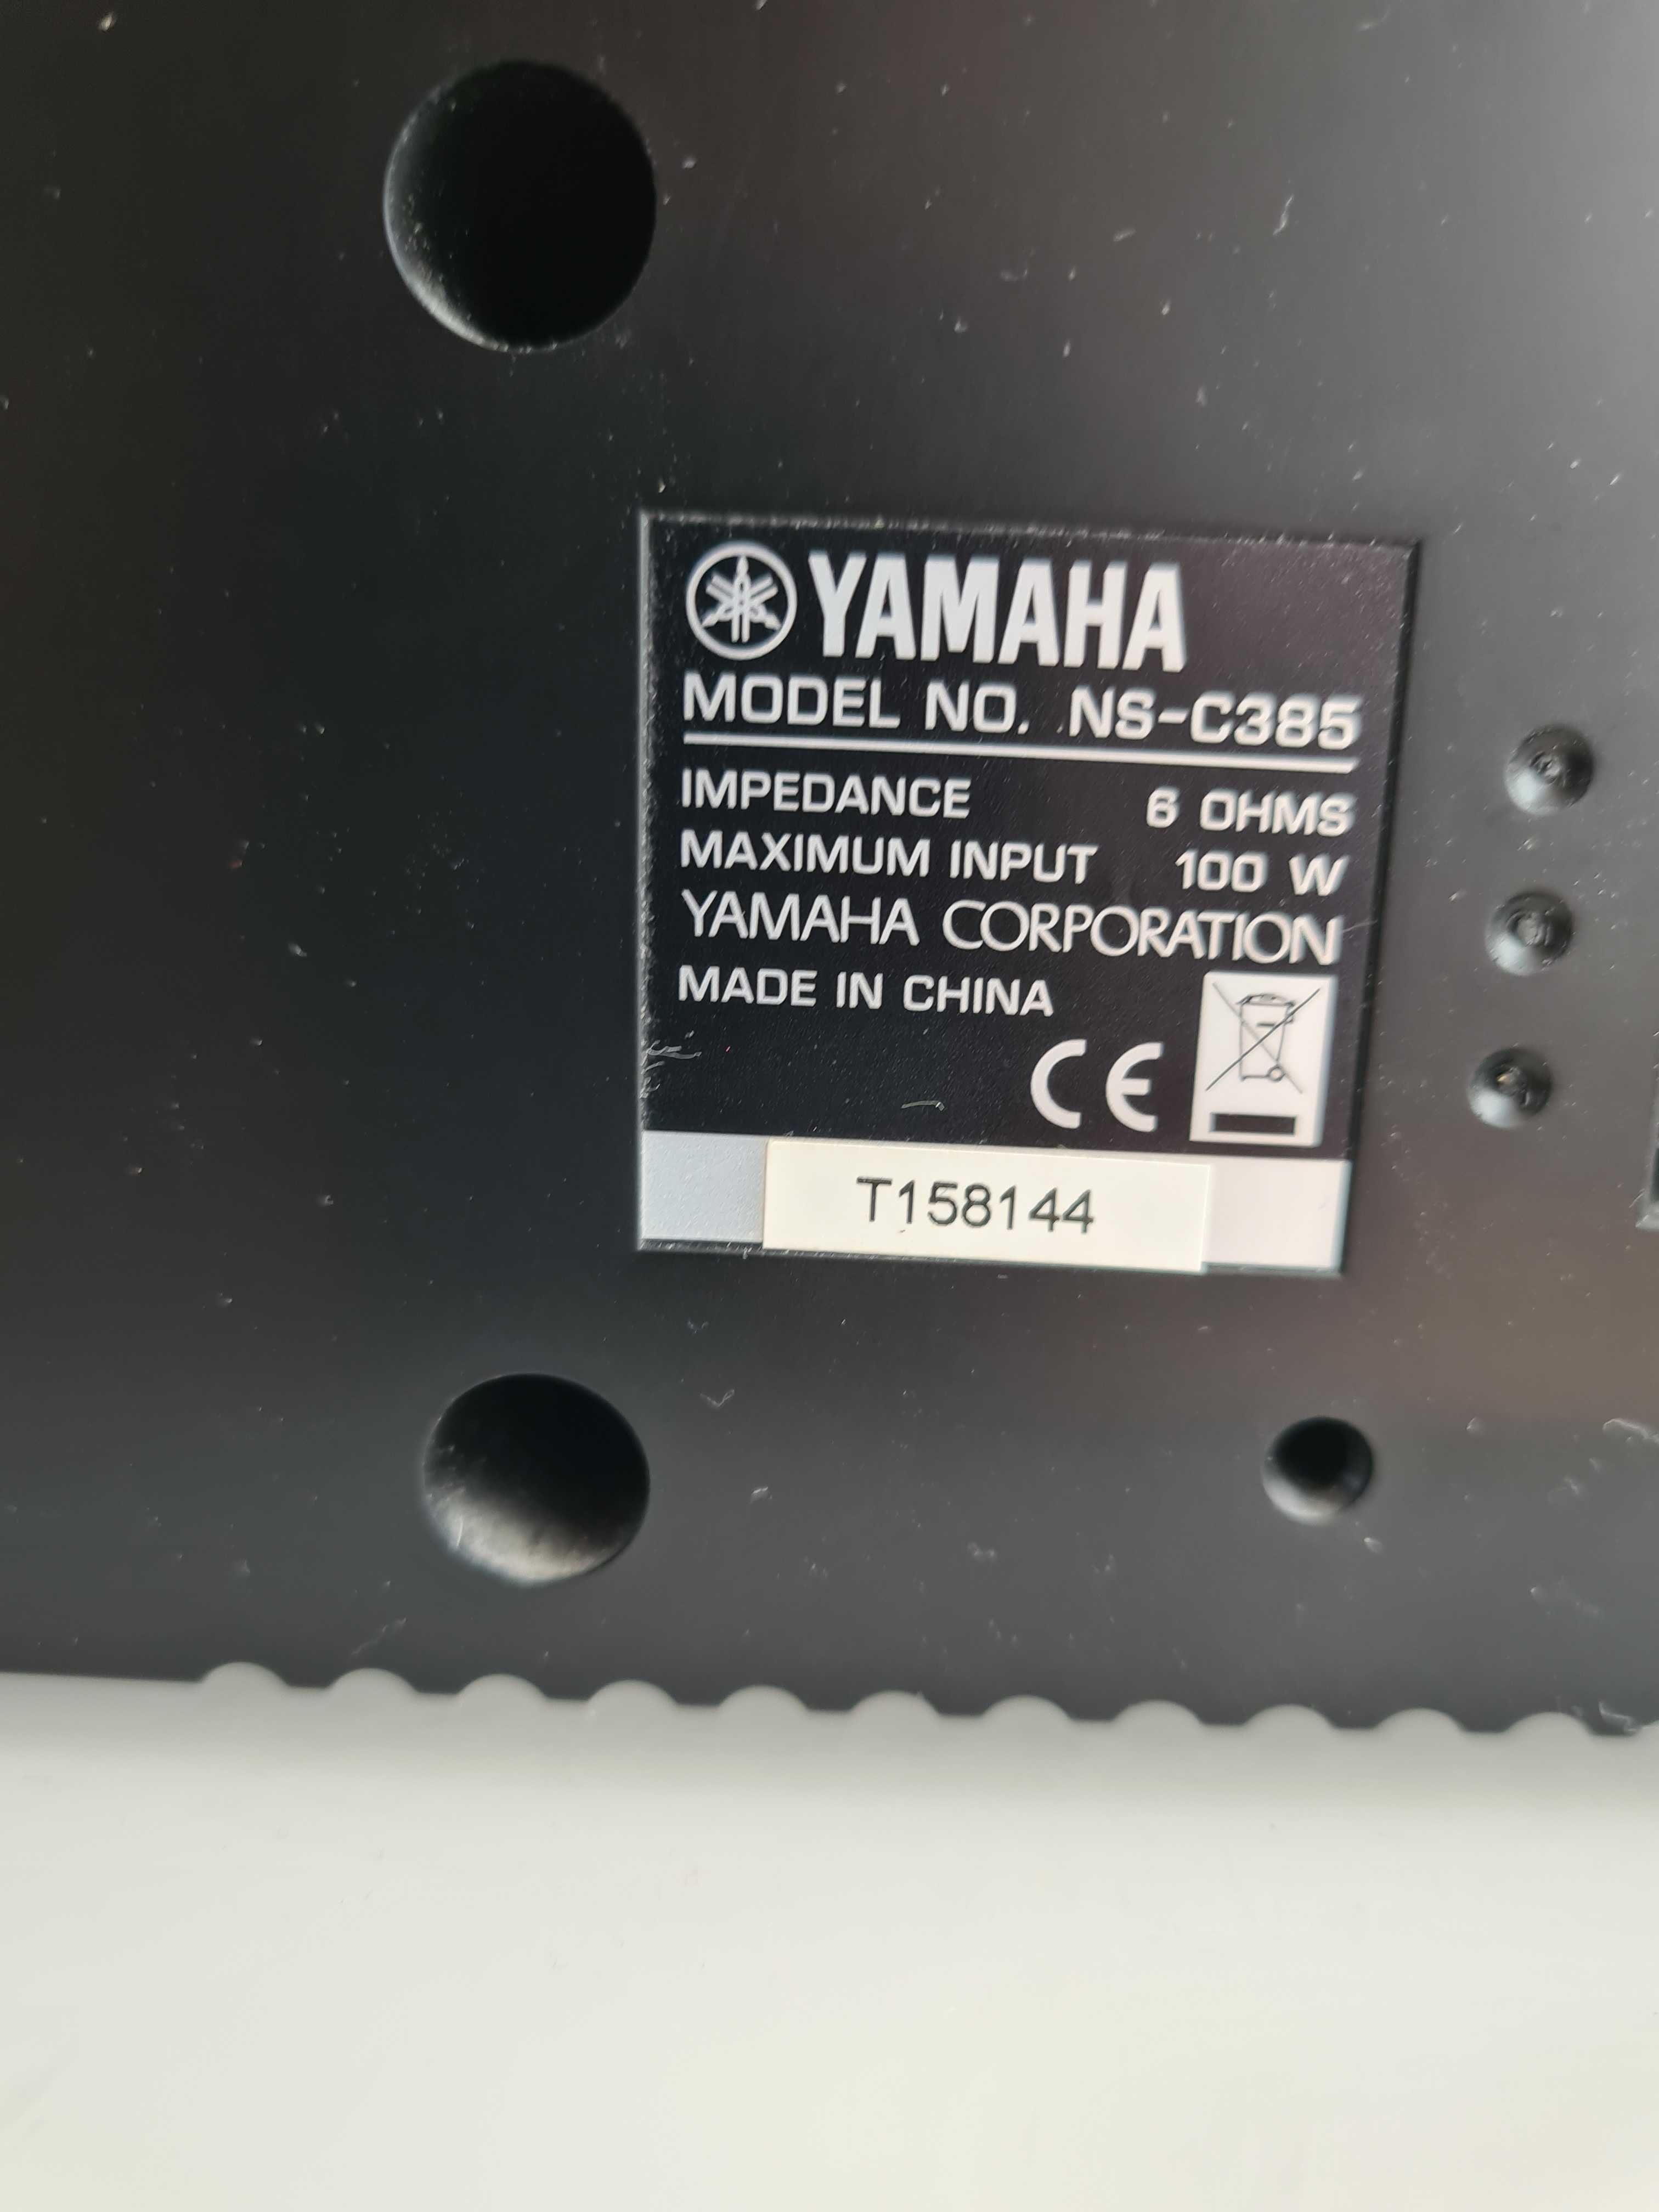 OKAZJA Głośniki Yamaha Ns 385 kino domowe 5.0 male